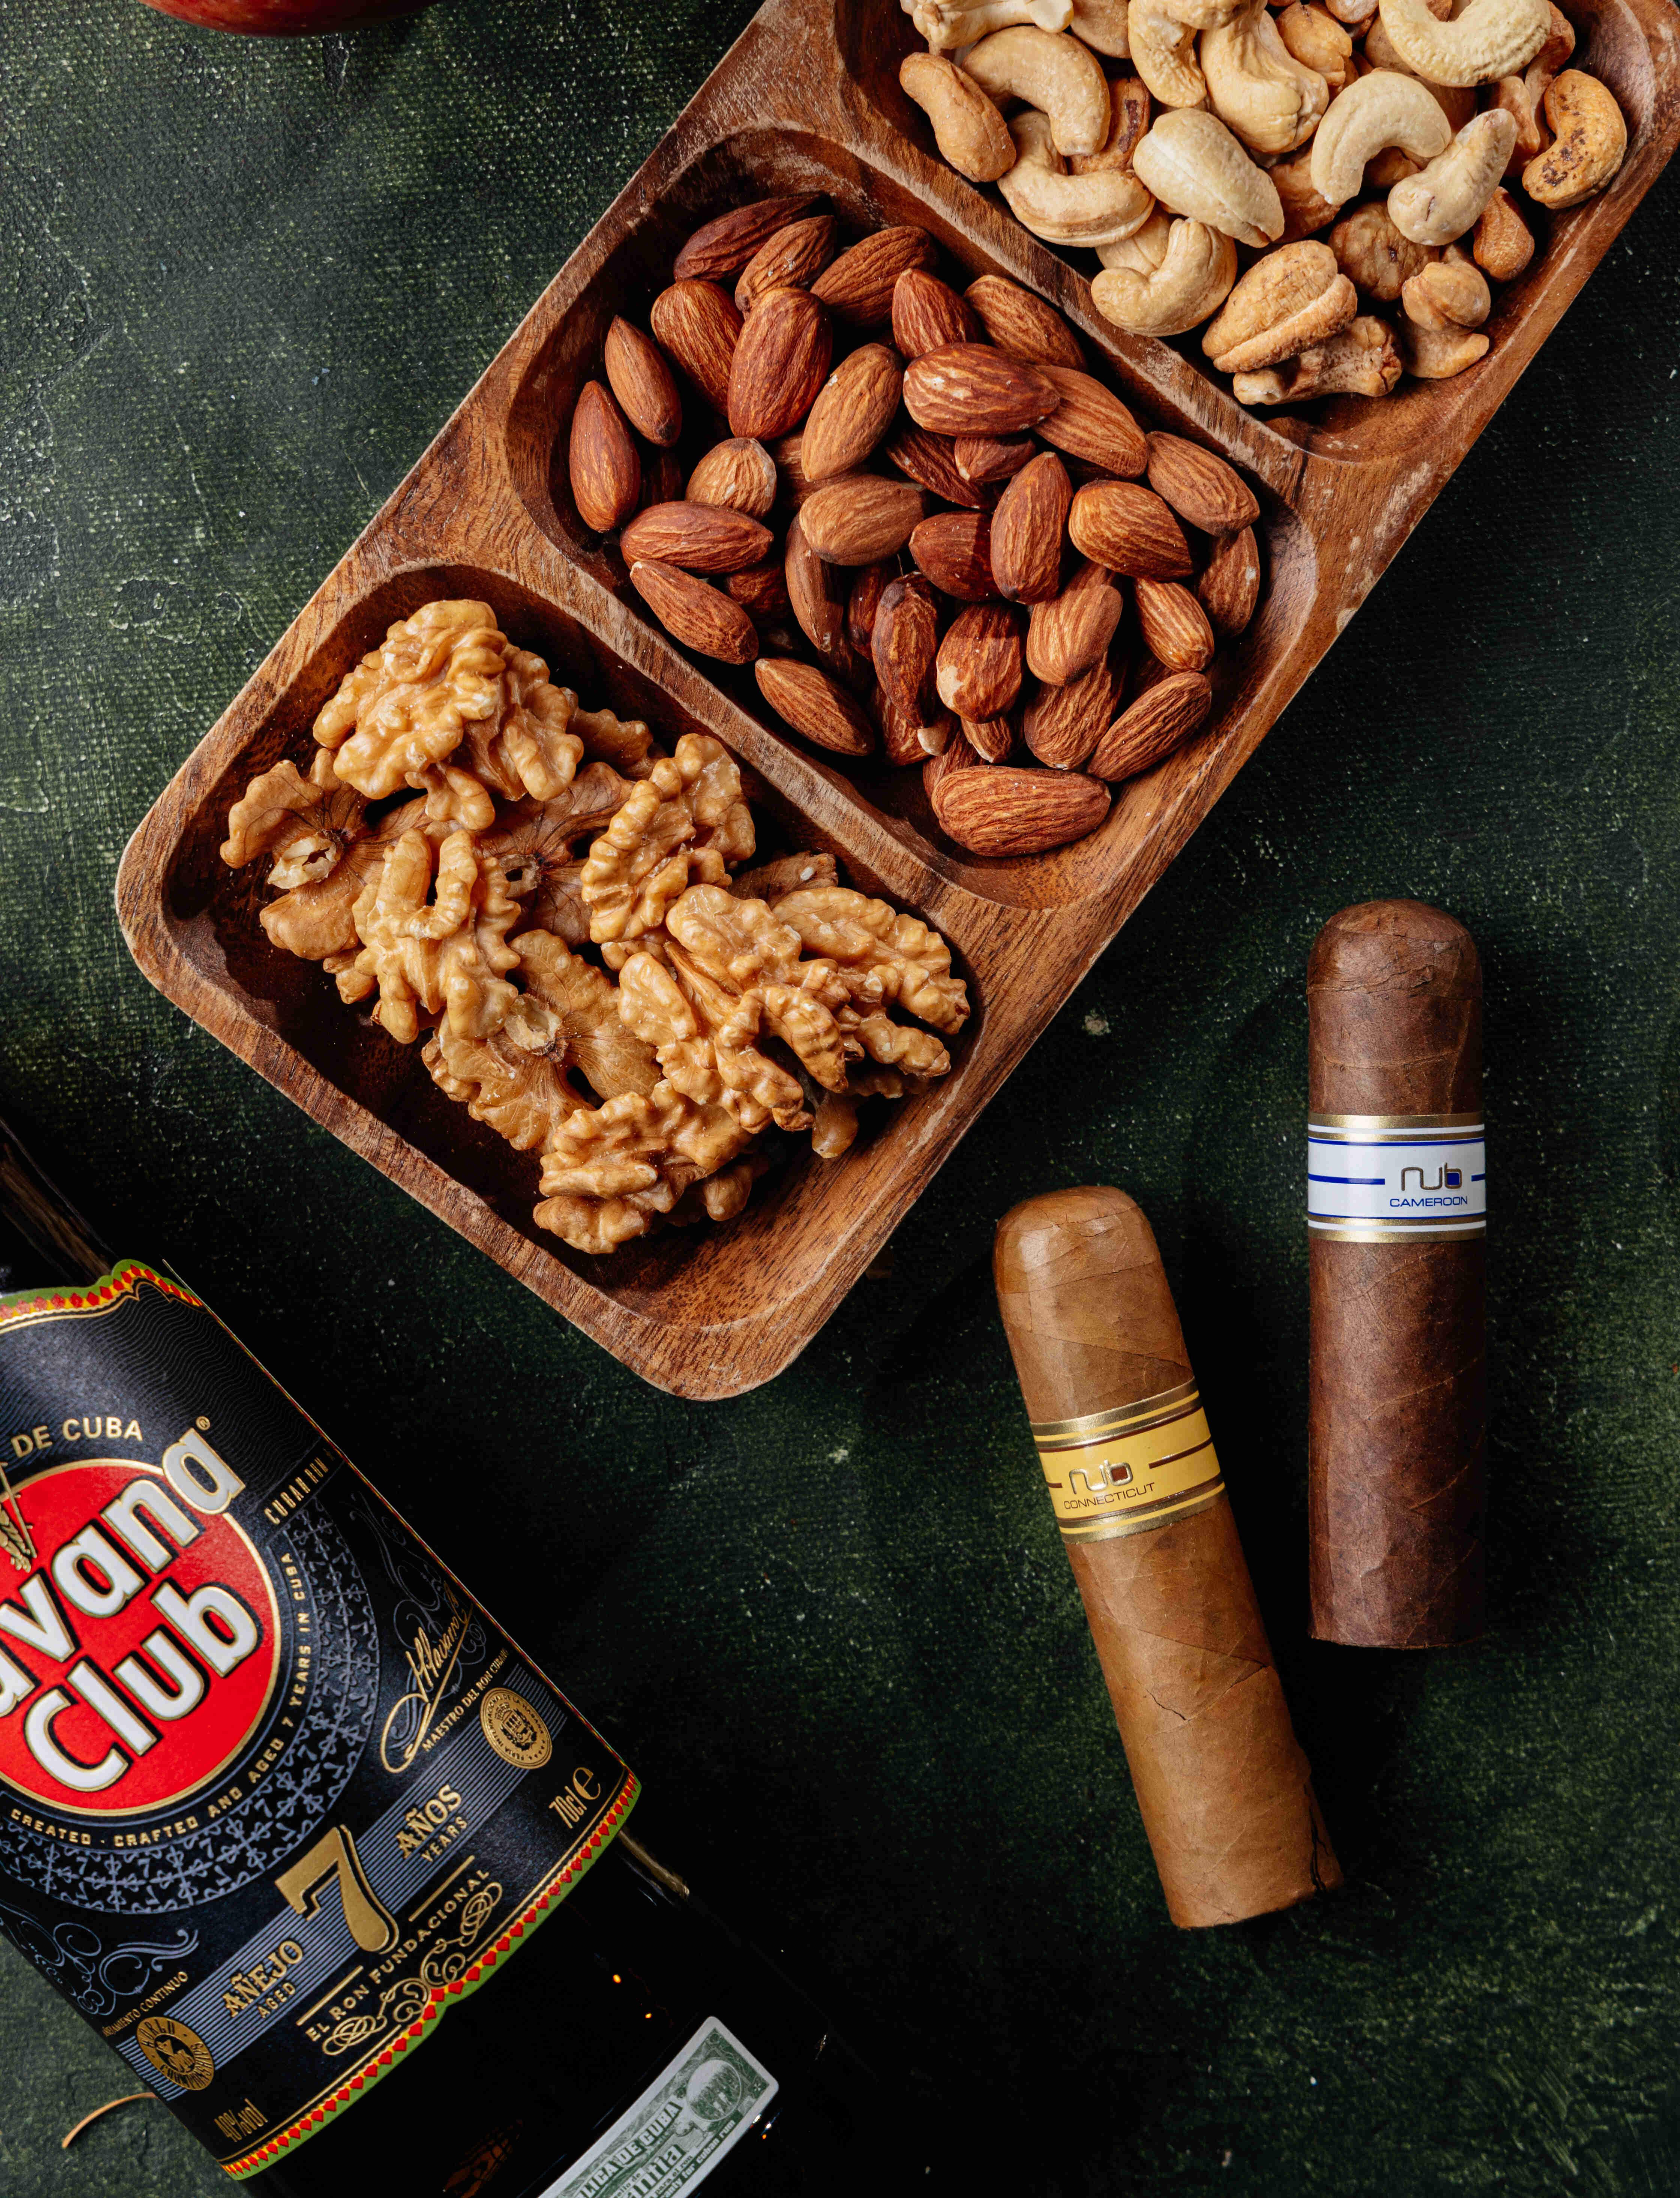 Сигары Nub, ром Havana Club 7 Anos, сигарная турбозажигалка, смесь орехов